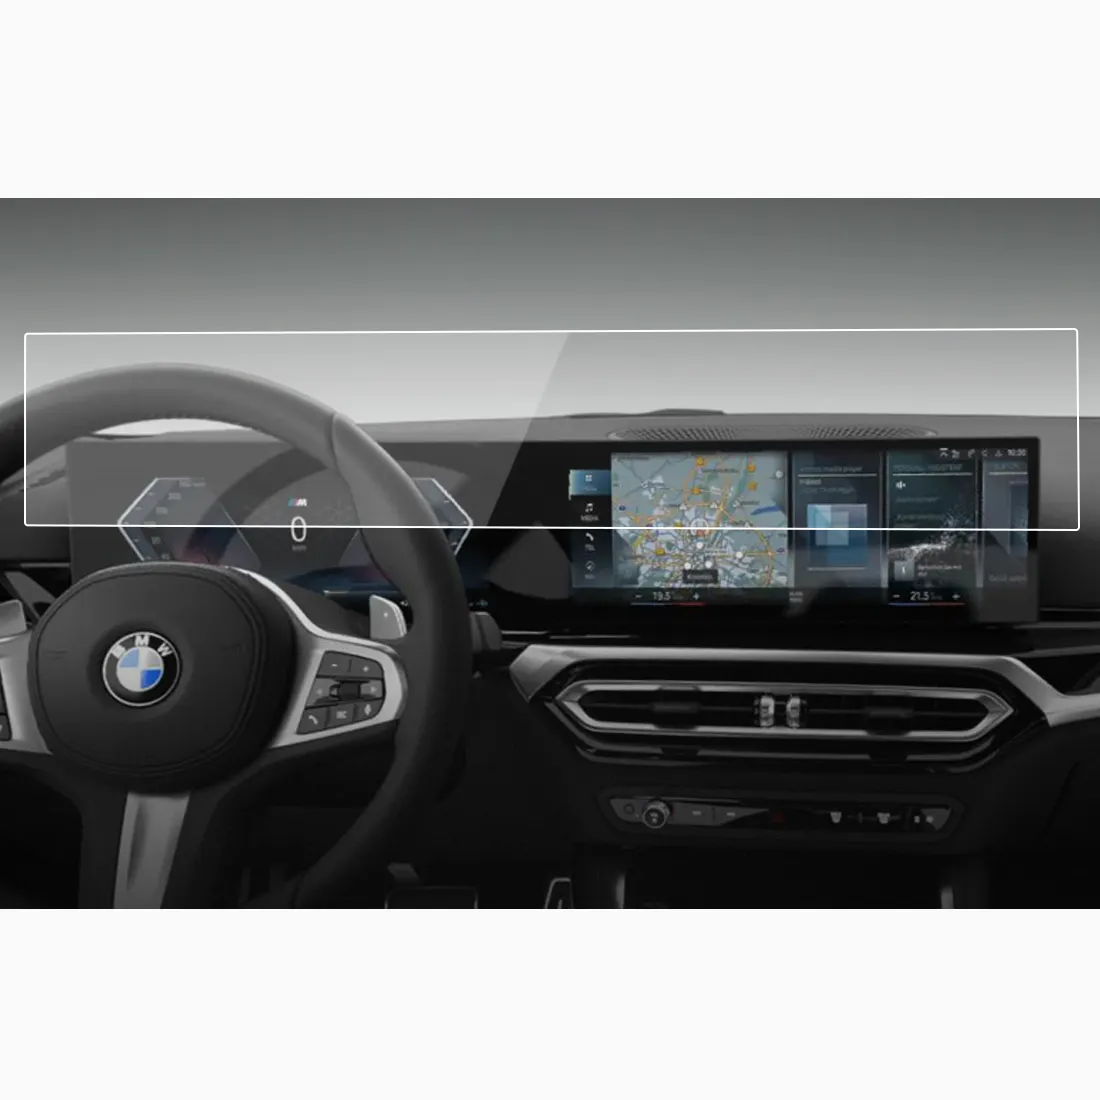 גבוהה ברור אביזרי רכב ניווט GPS מזג זכוכית מסך מגן סרט עבור BMW 2 סדרת 14.9 אינץ אוטומטי DVD נגן רדיד